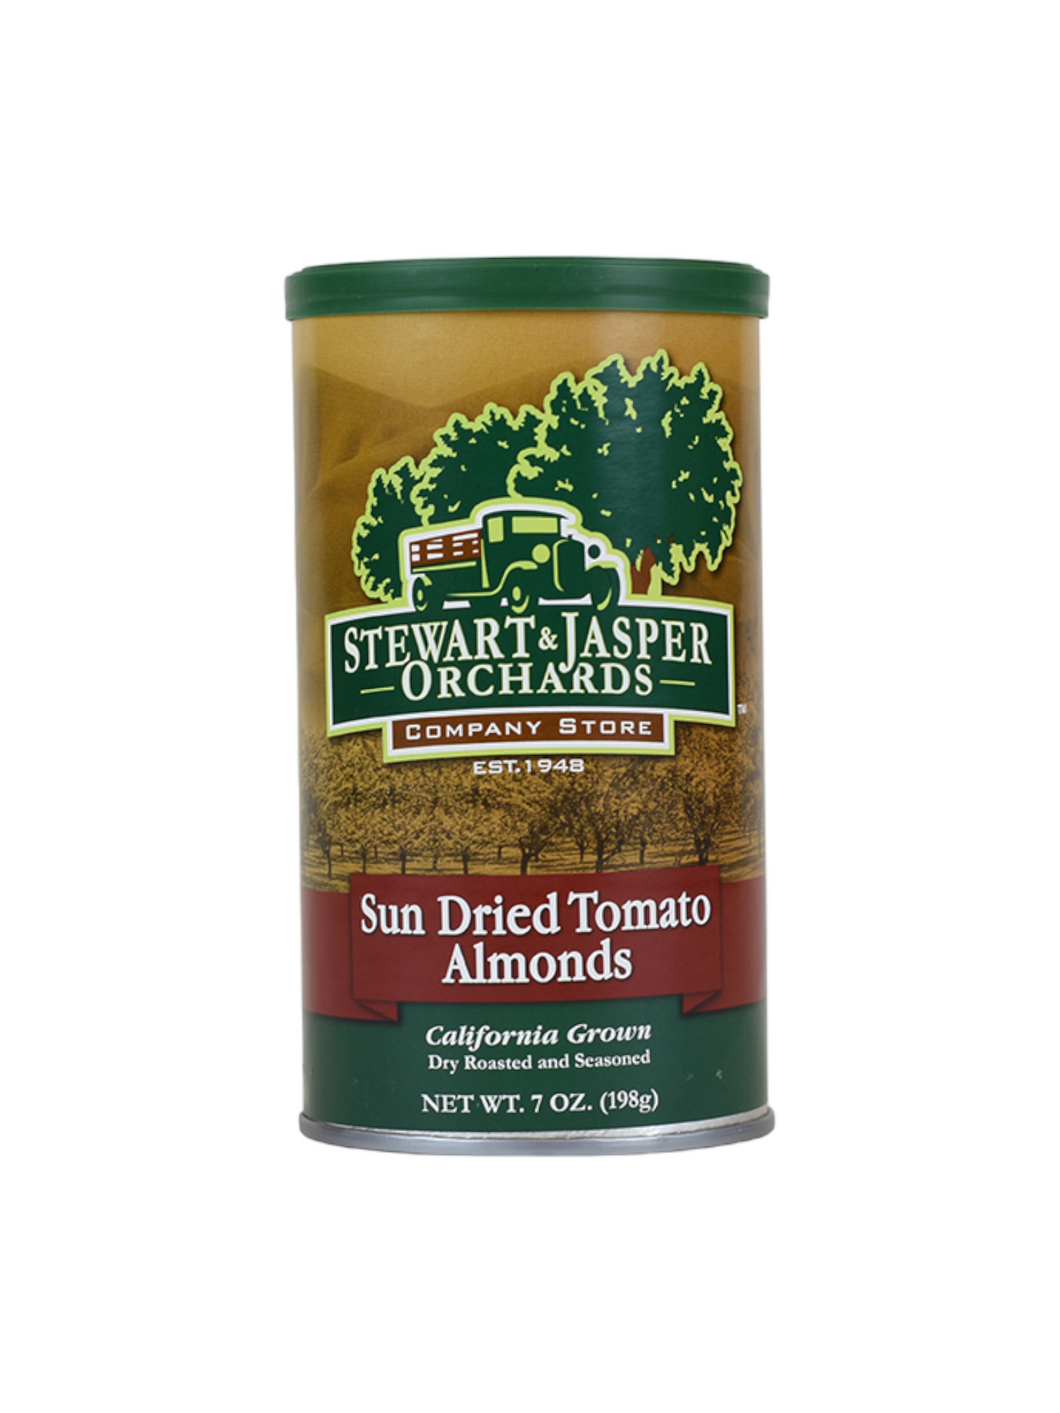 Sun Dried Tomato Almonds